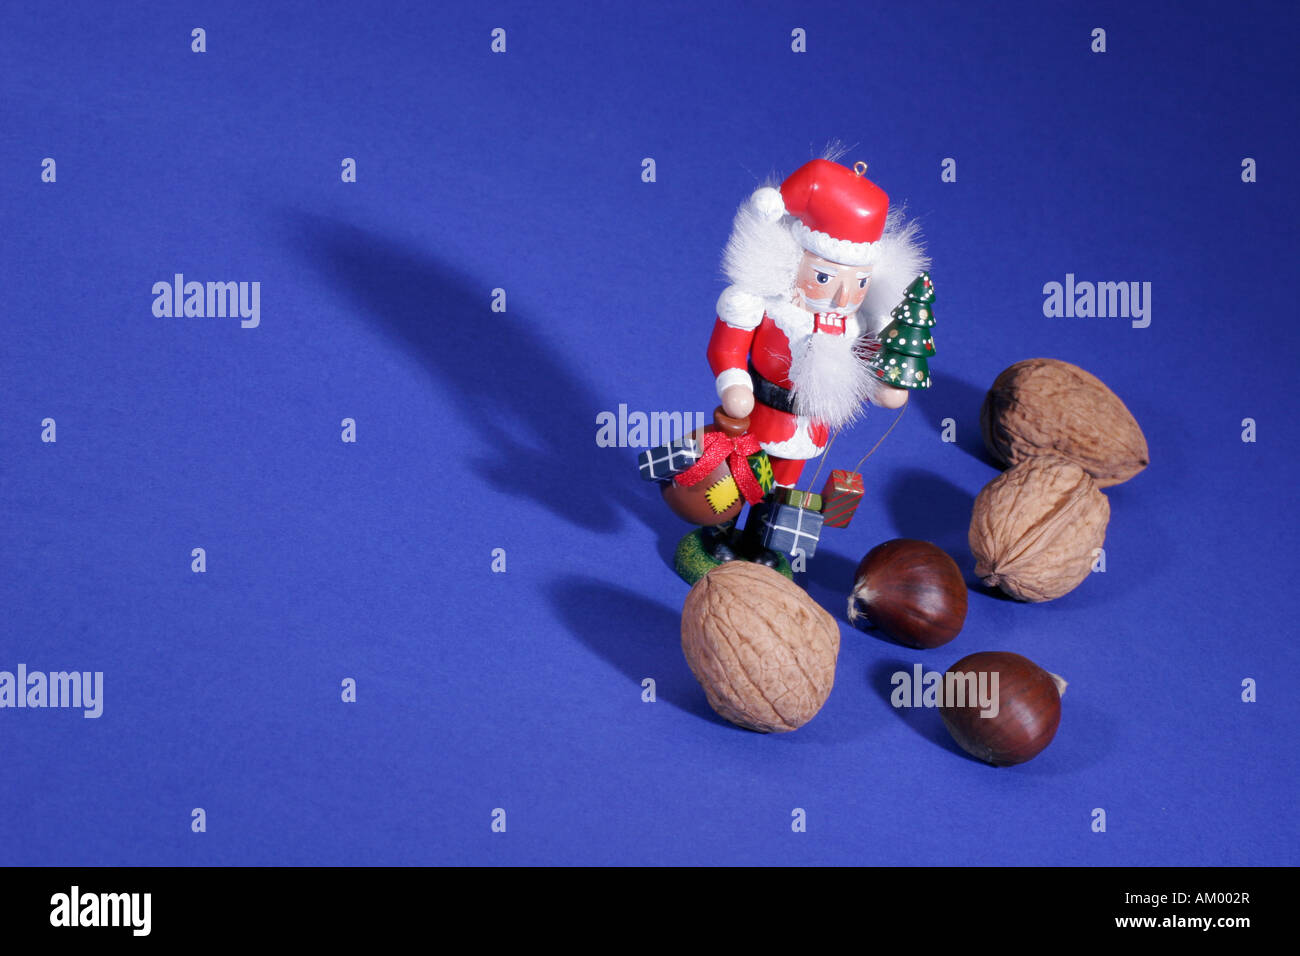 Santa Claus between nuts Stock Photo